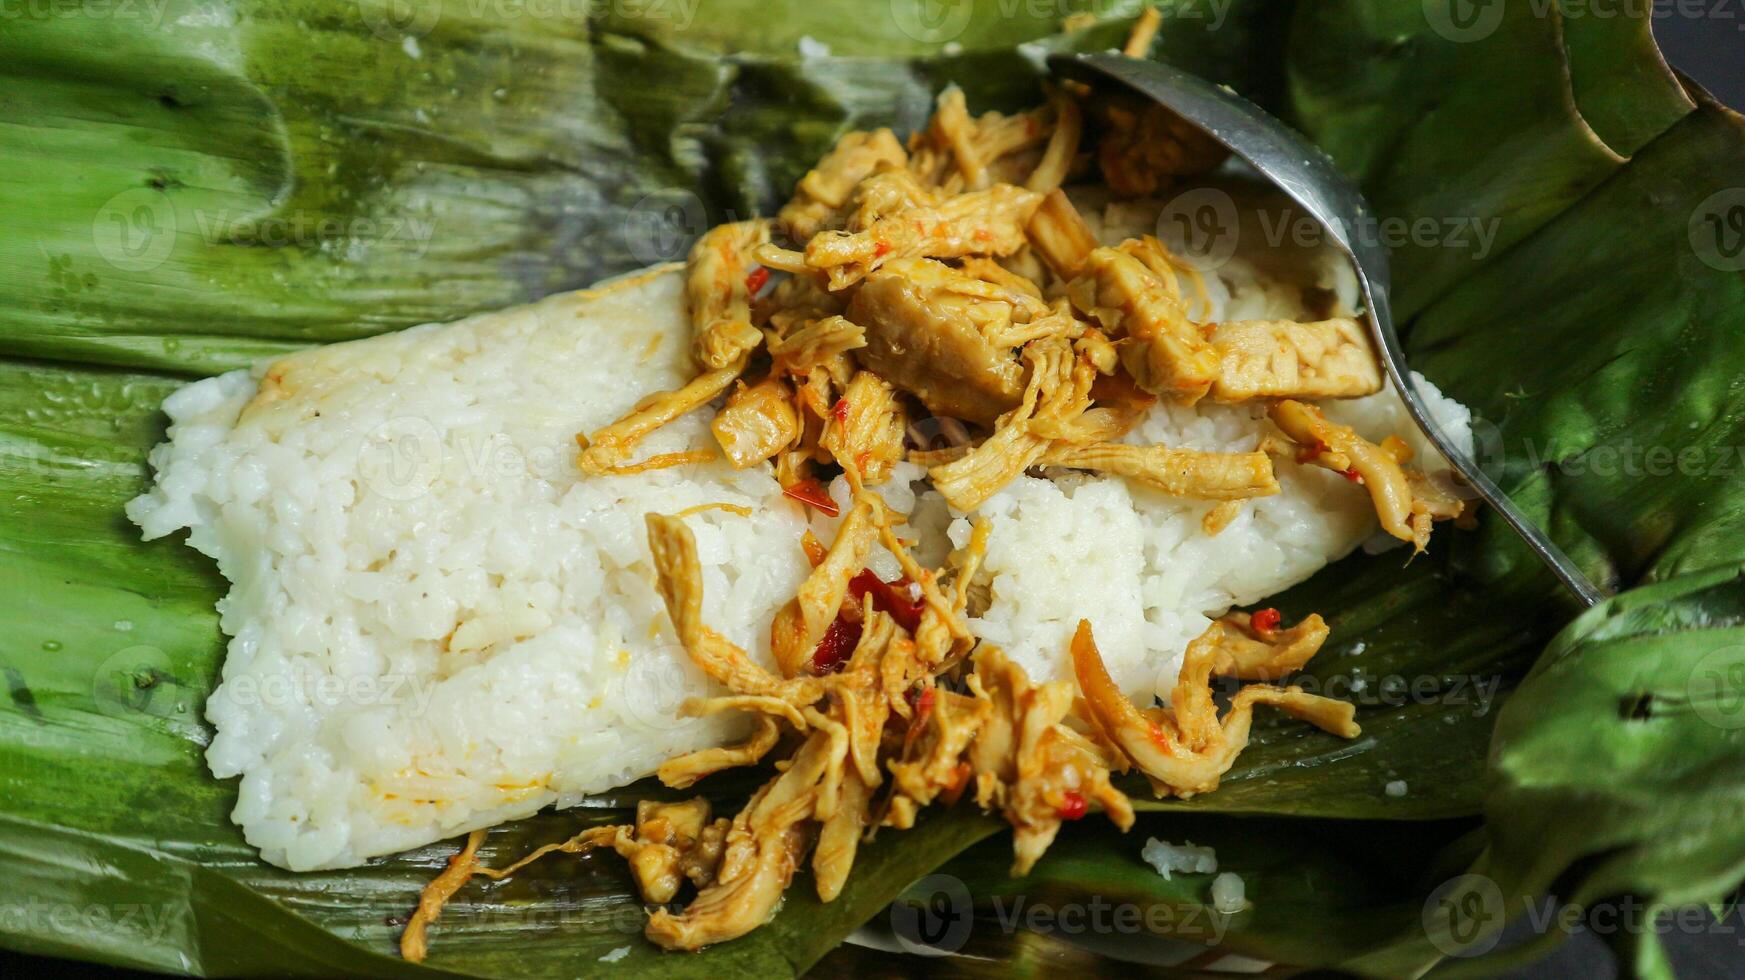 nasi bakar oder gegrillter reis gerösteter reis eingewickelt in bananenblatt, indonesisches traditionelles essen foto